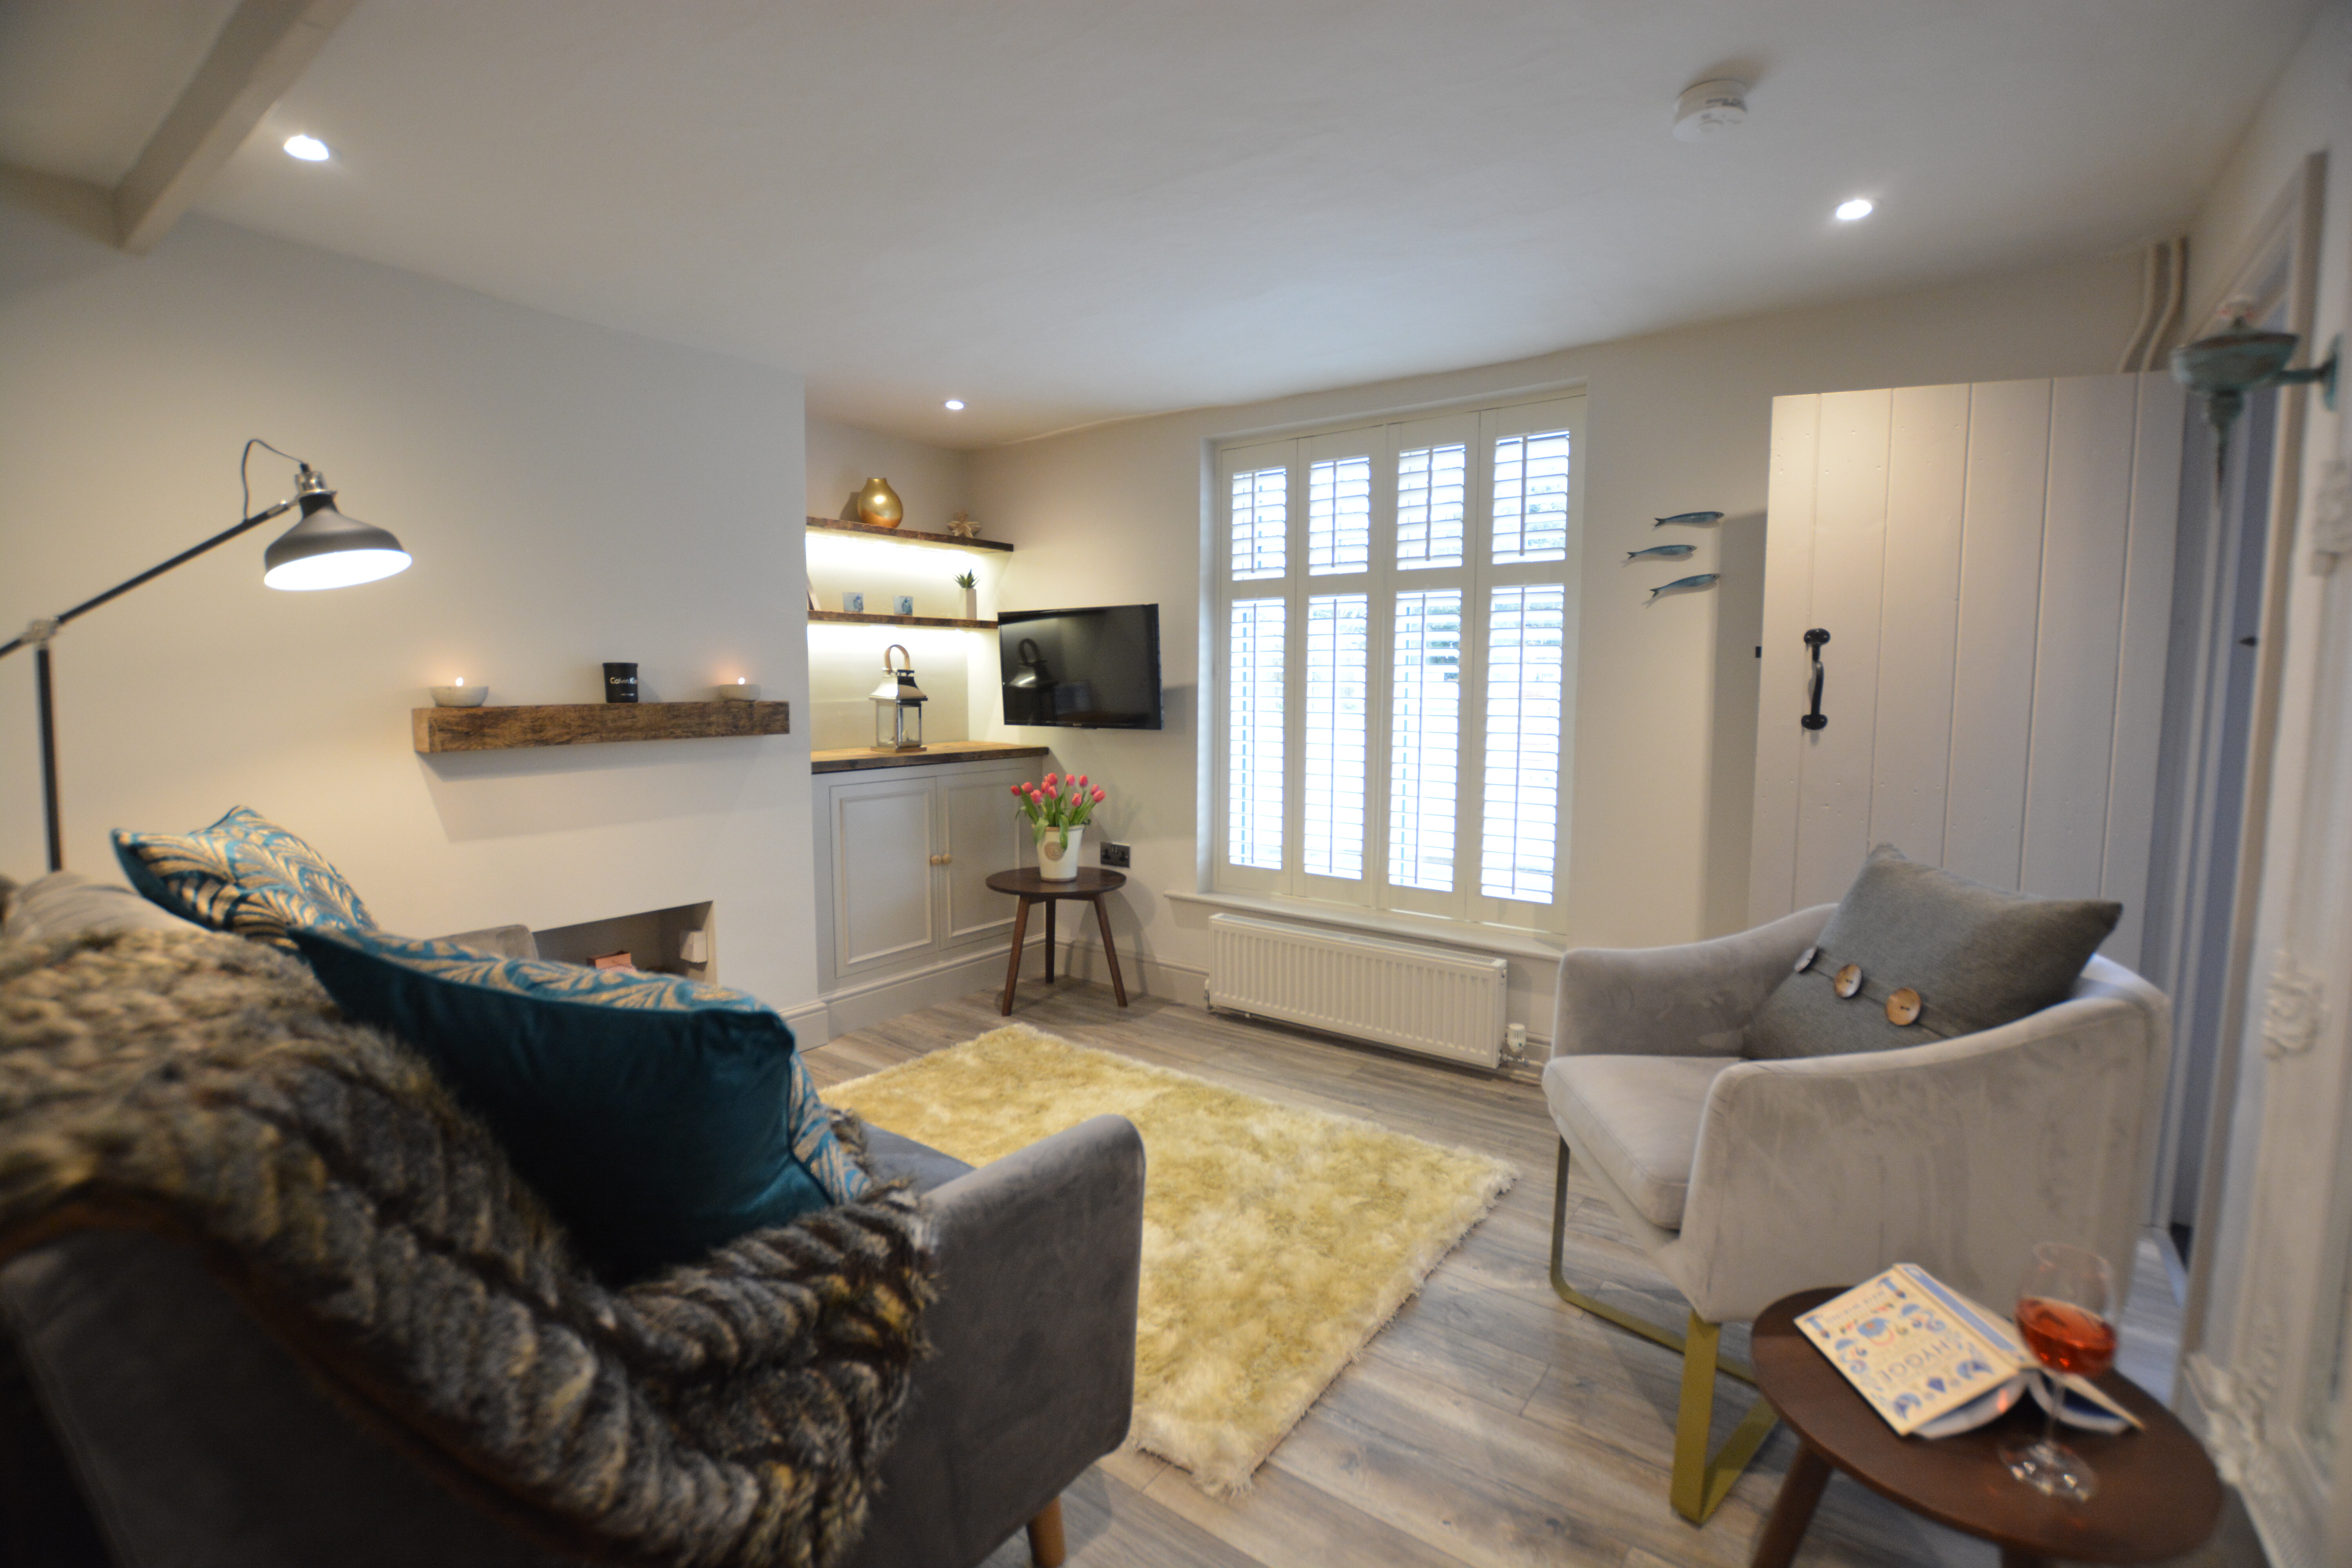 2 bedroom Cottage for rent in Aldeburgh